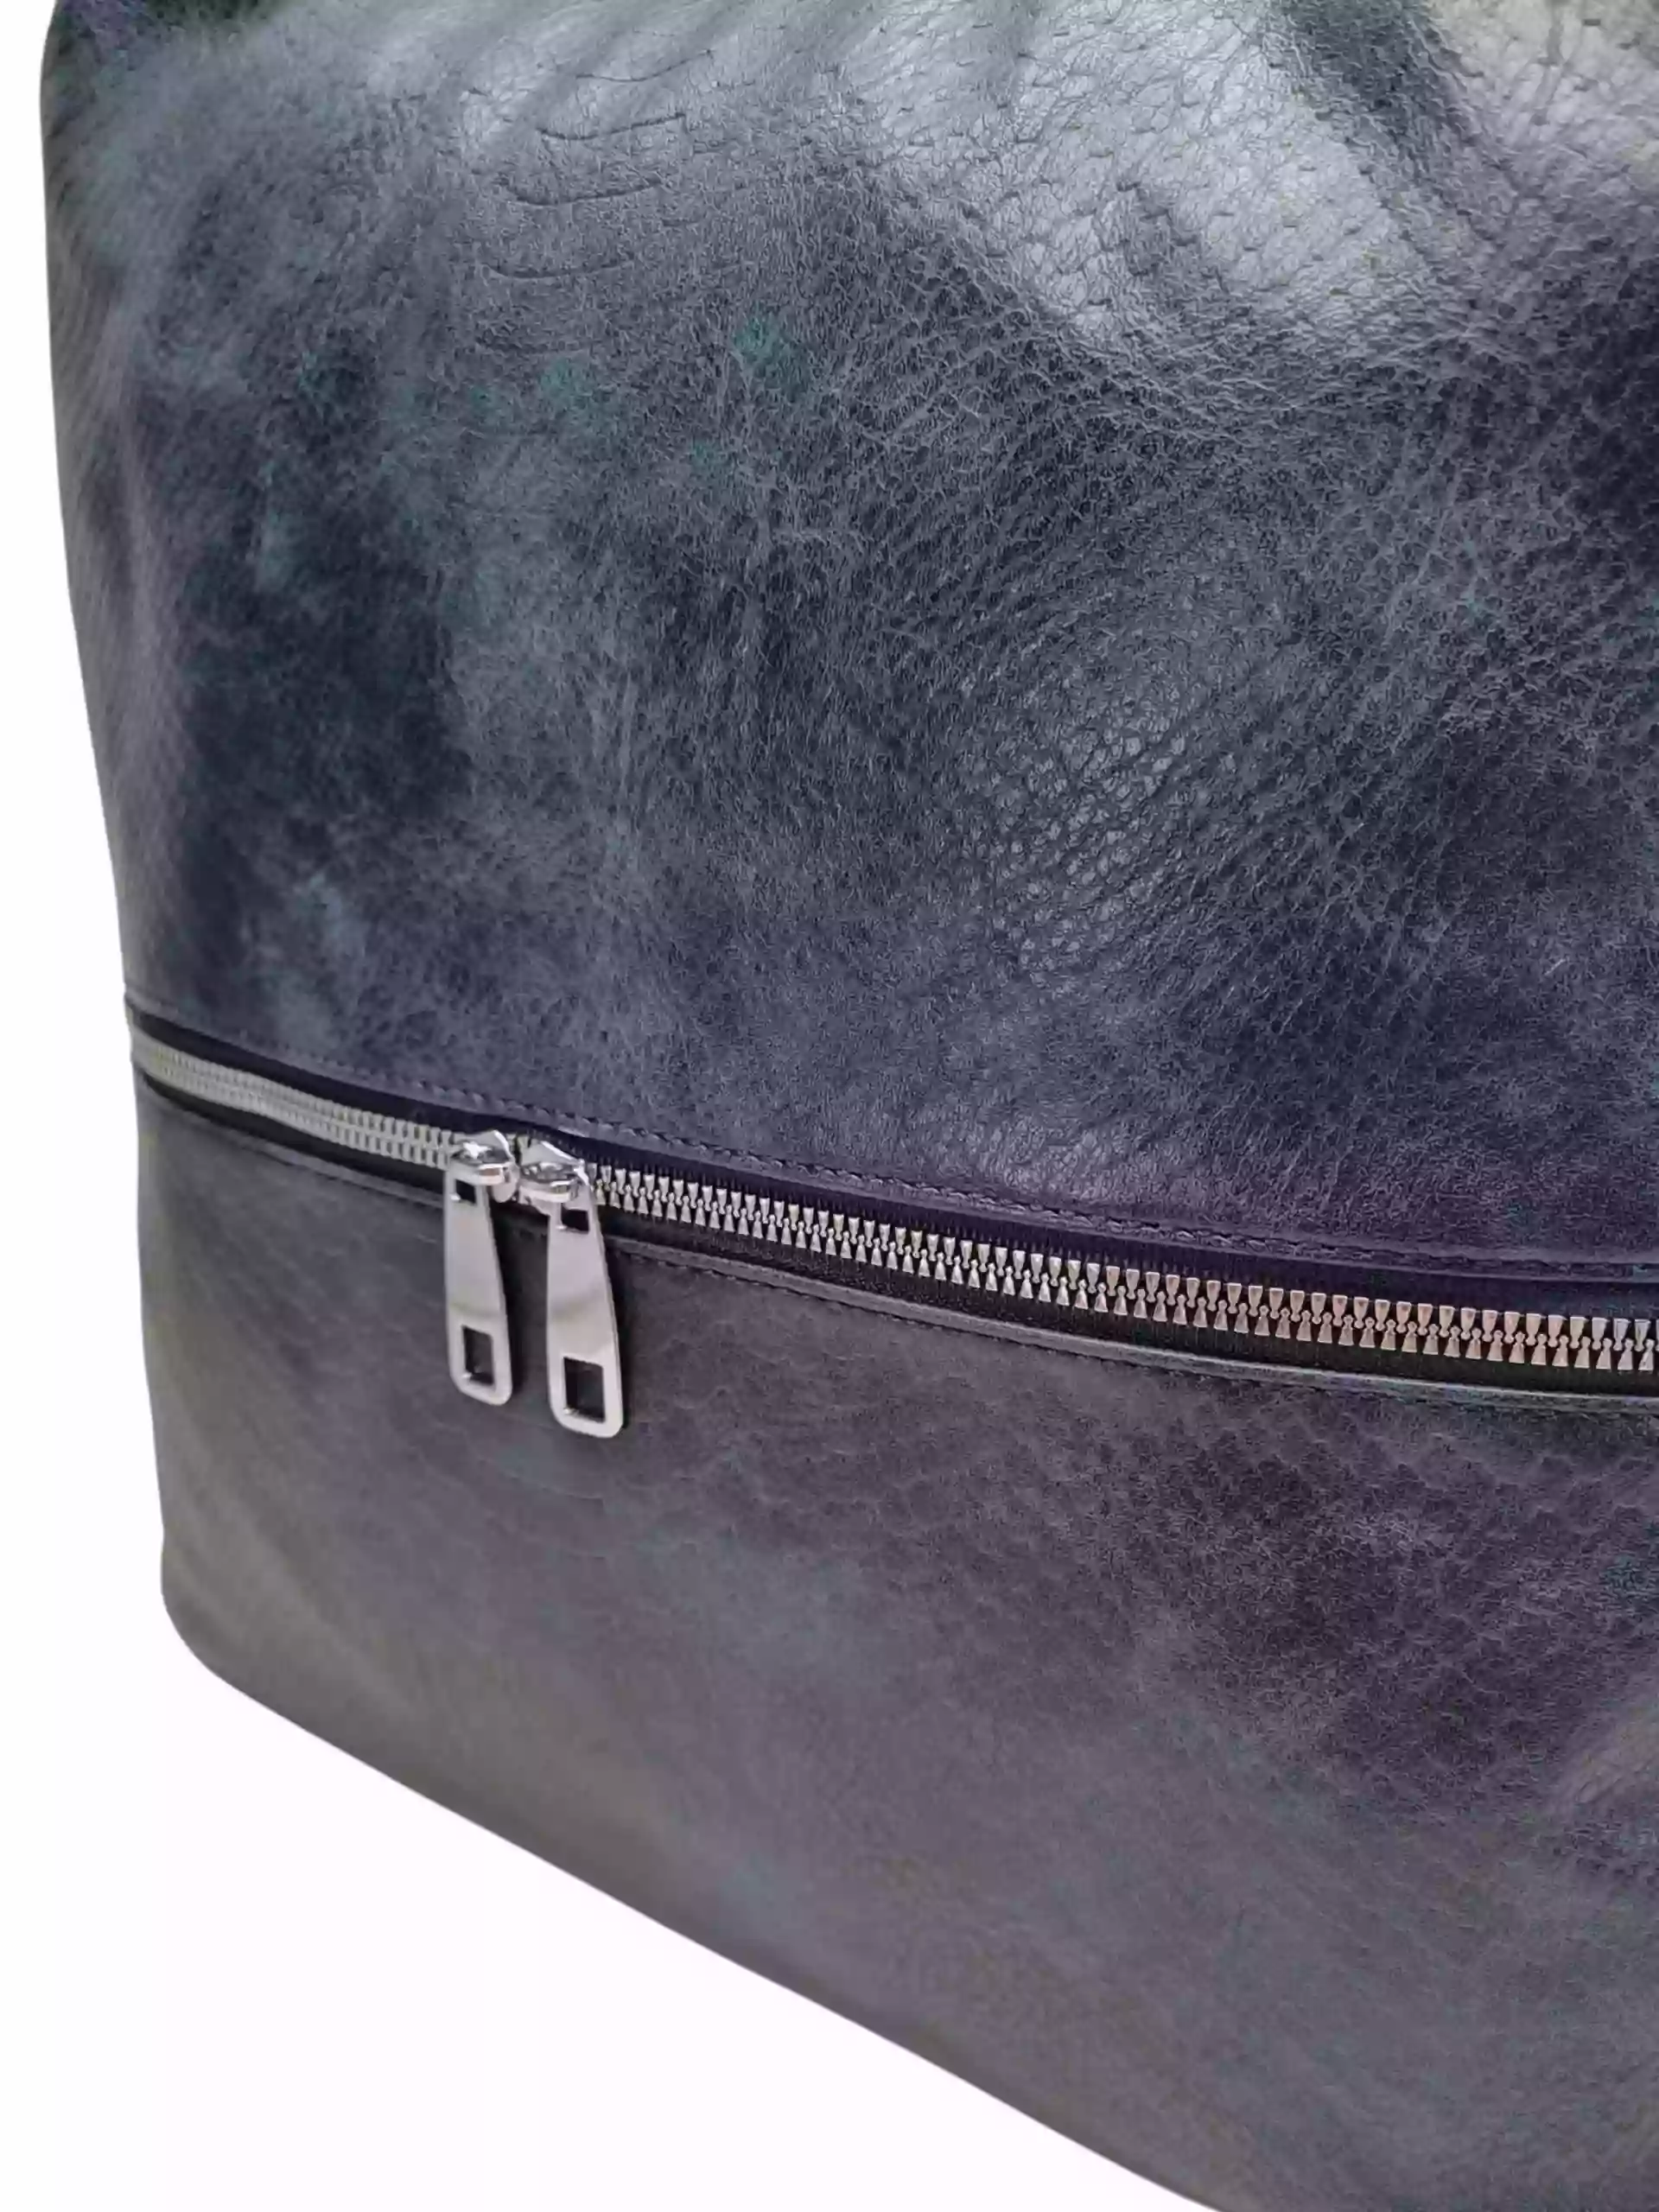 Moderní tmavě modrý kabelko-batoh z eko kůže, Tapple, H190010, detail kabelko-batohu 2v1